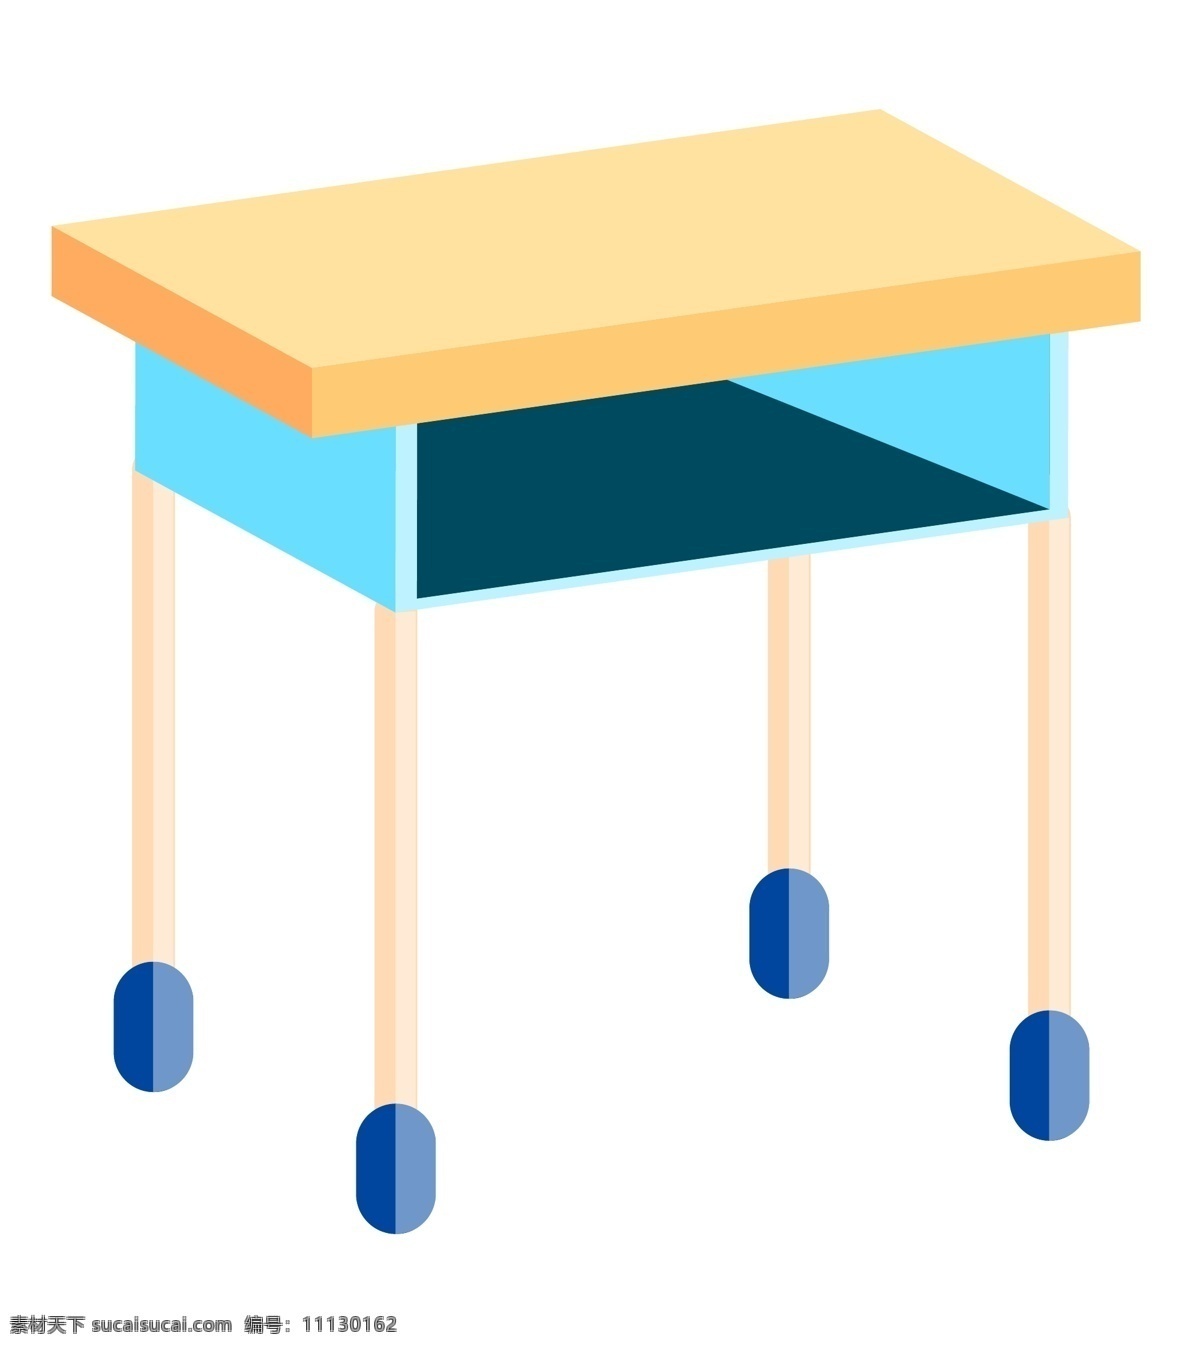 d 学习 文具 桌子 儿童 书桌 生活用品 黄色的书桌 蓝色的装饰 蓝色的柜子 卡通书桌 创意书桌